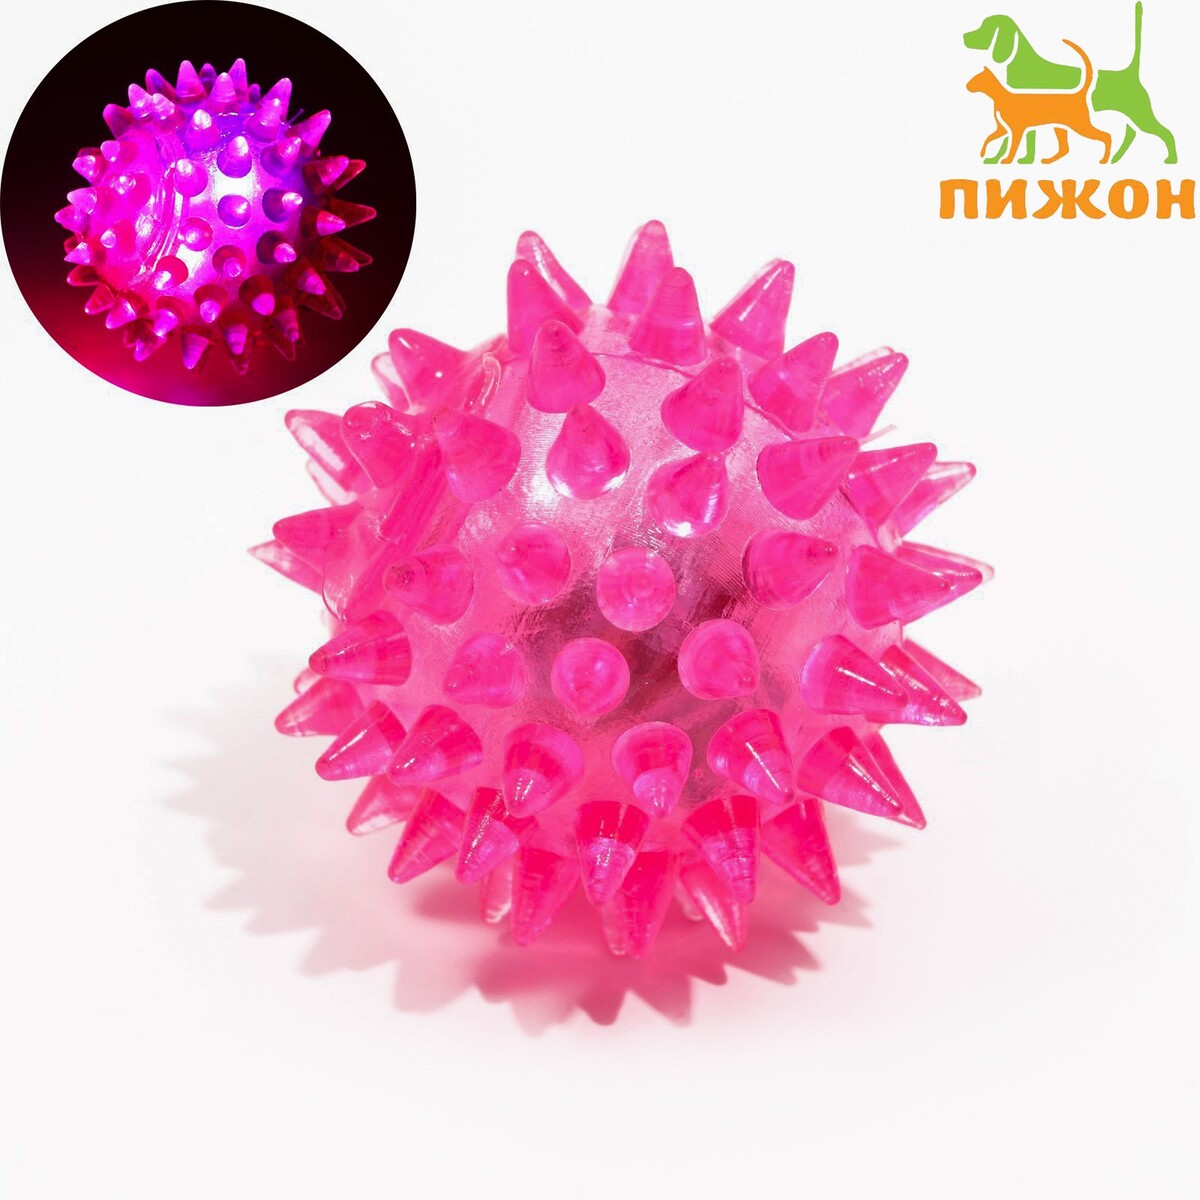 Мяч светящийся для животных малый, tpr, 4,5 см, розовый мяч светящийся для животных малый tpr 4 5 см желтый